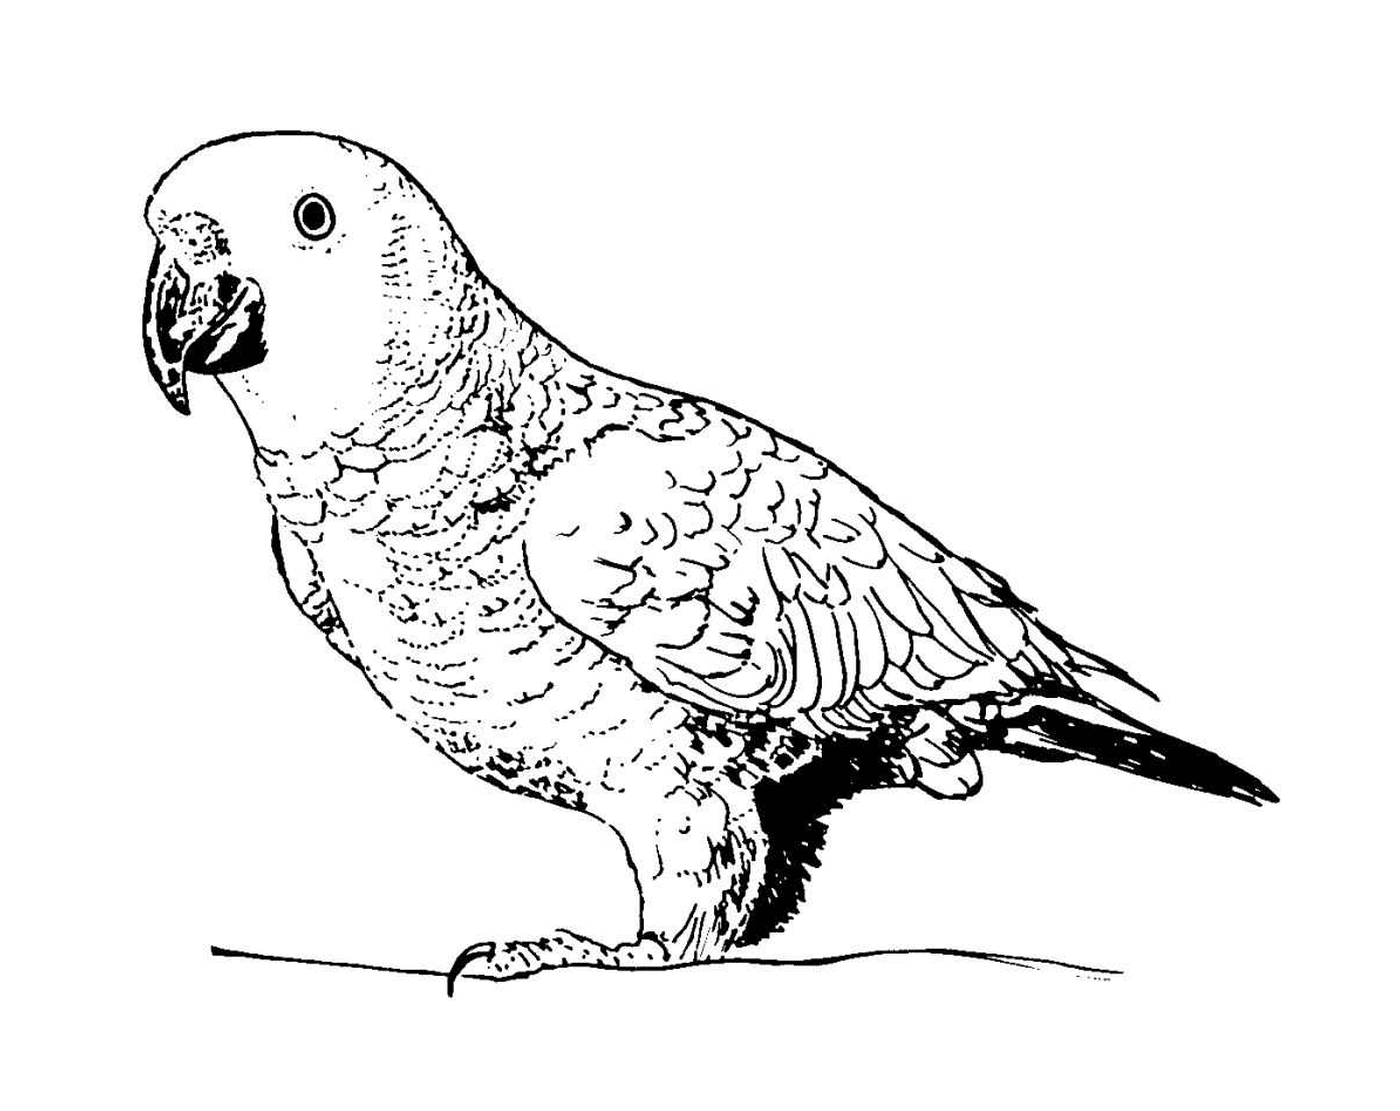  попугай, питающийся фруктами и семенами 